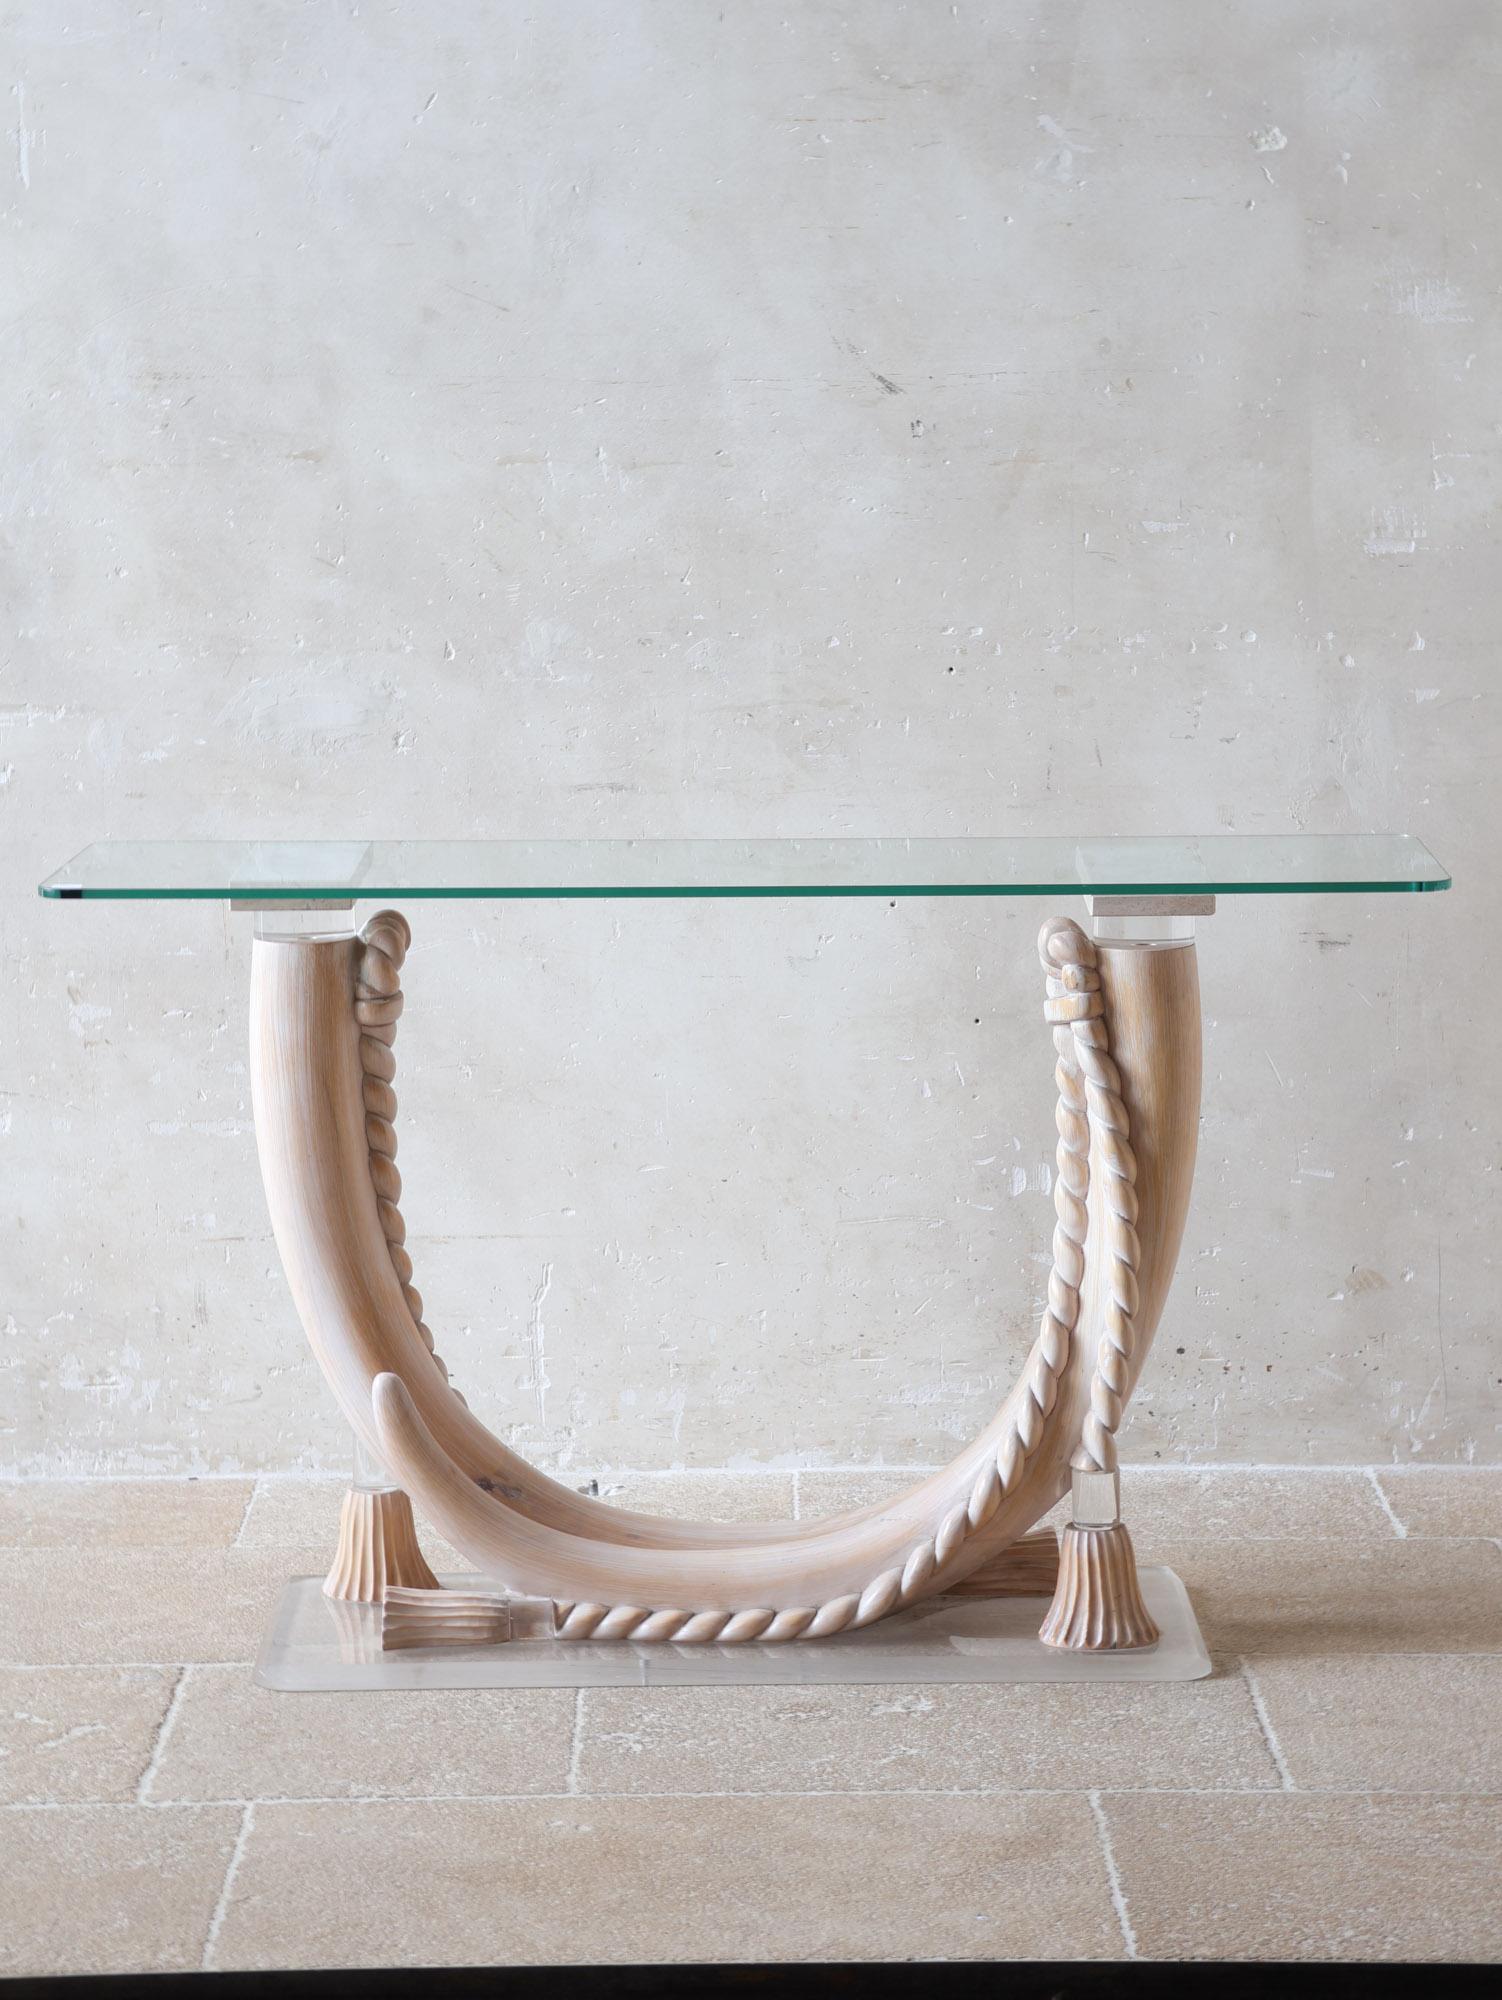 Table console attribuée à Sergio Longoni, vers 1980, Italie. Cette table de designer italien est dotée d'un plateau en verre (1 cm d'épaisseur) et d'une base en perlucite en forme de défenses, enveloppée de Corde. La base est posée sur un pied en